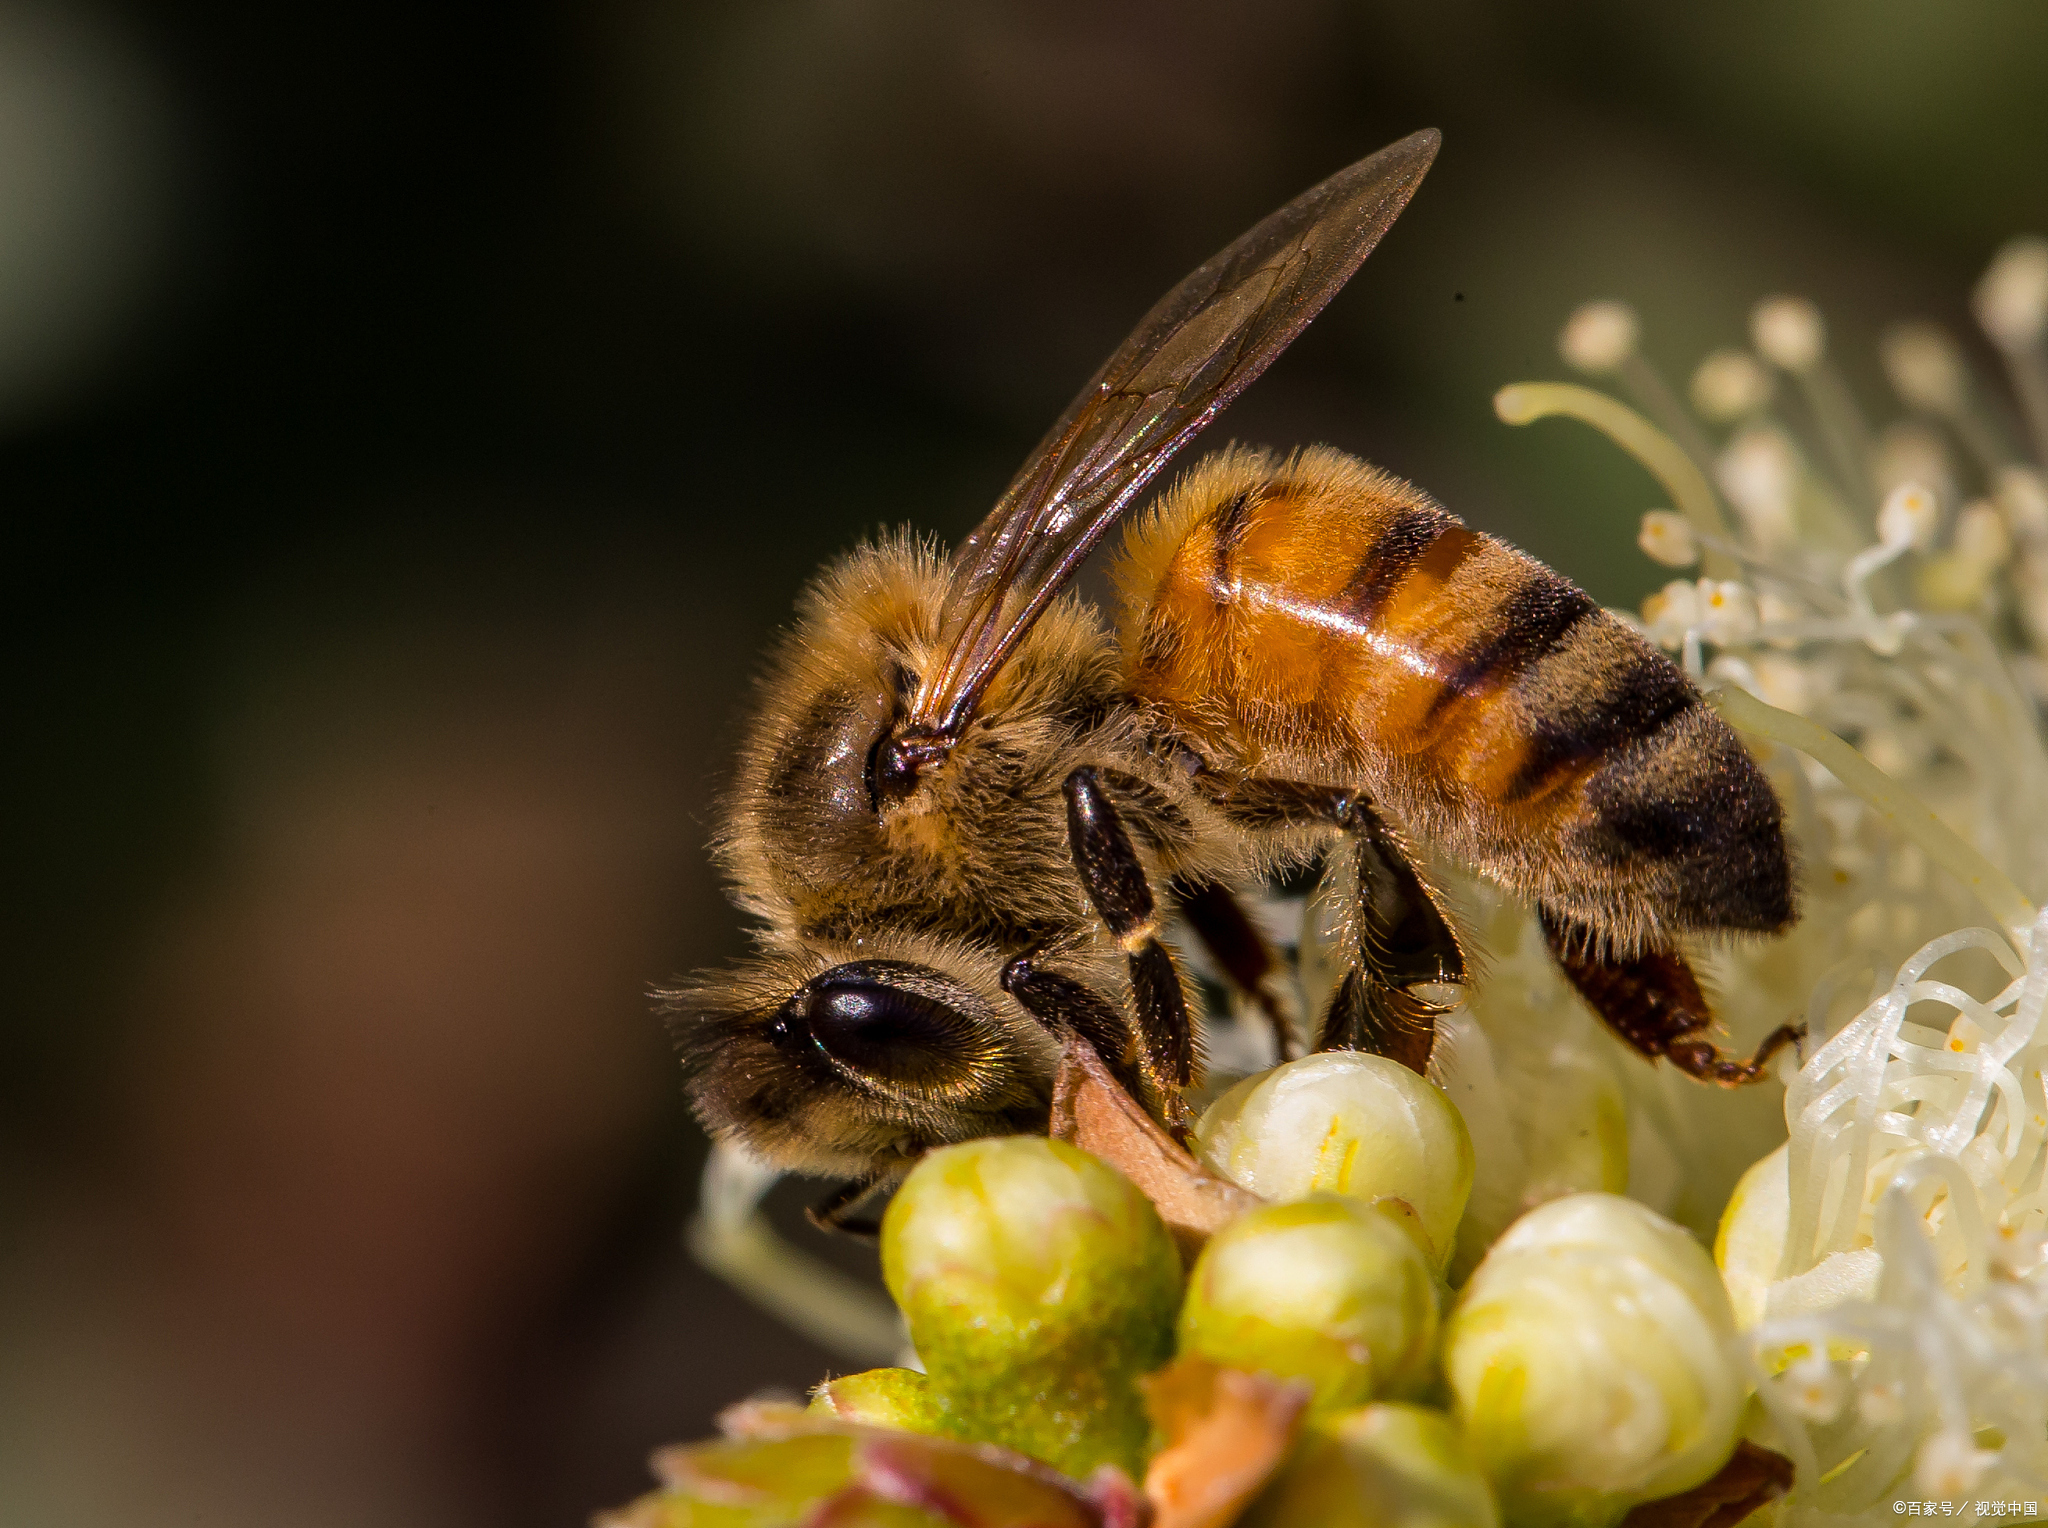 蜂的种类图片大全图片